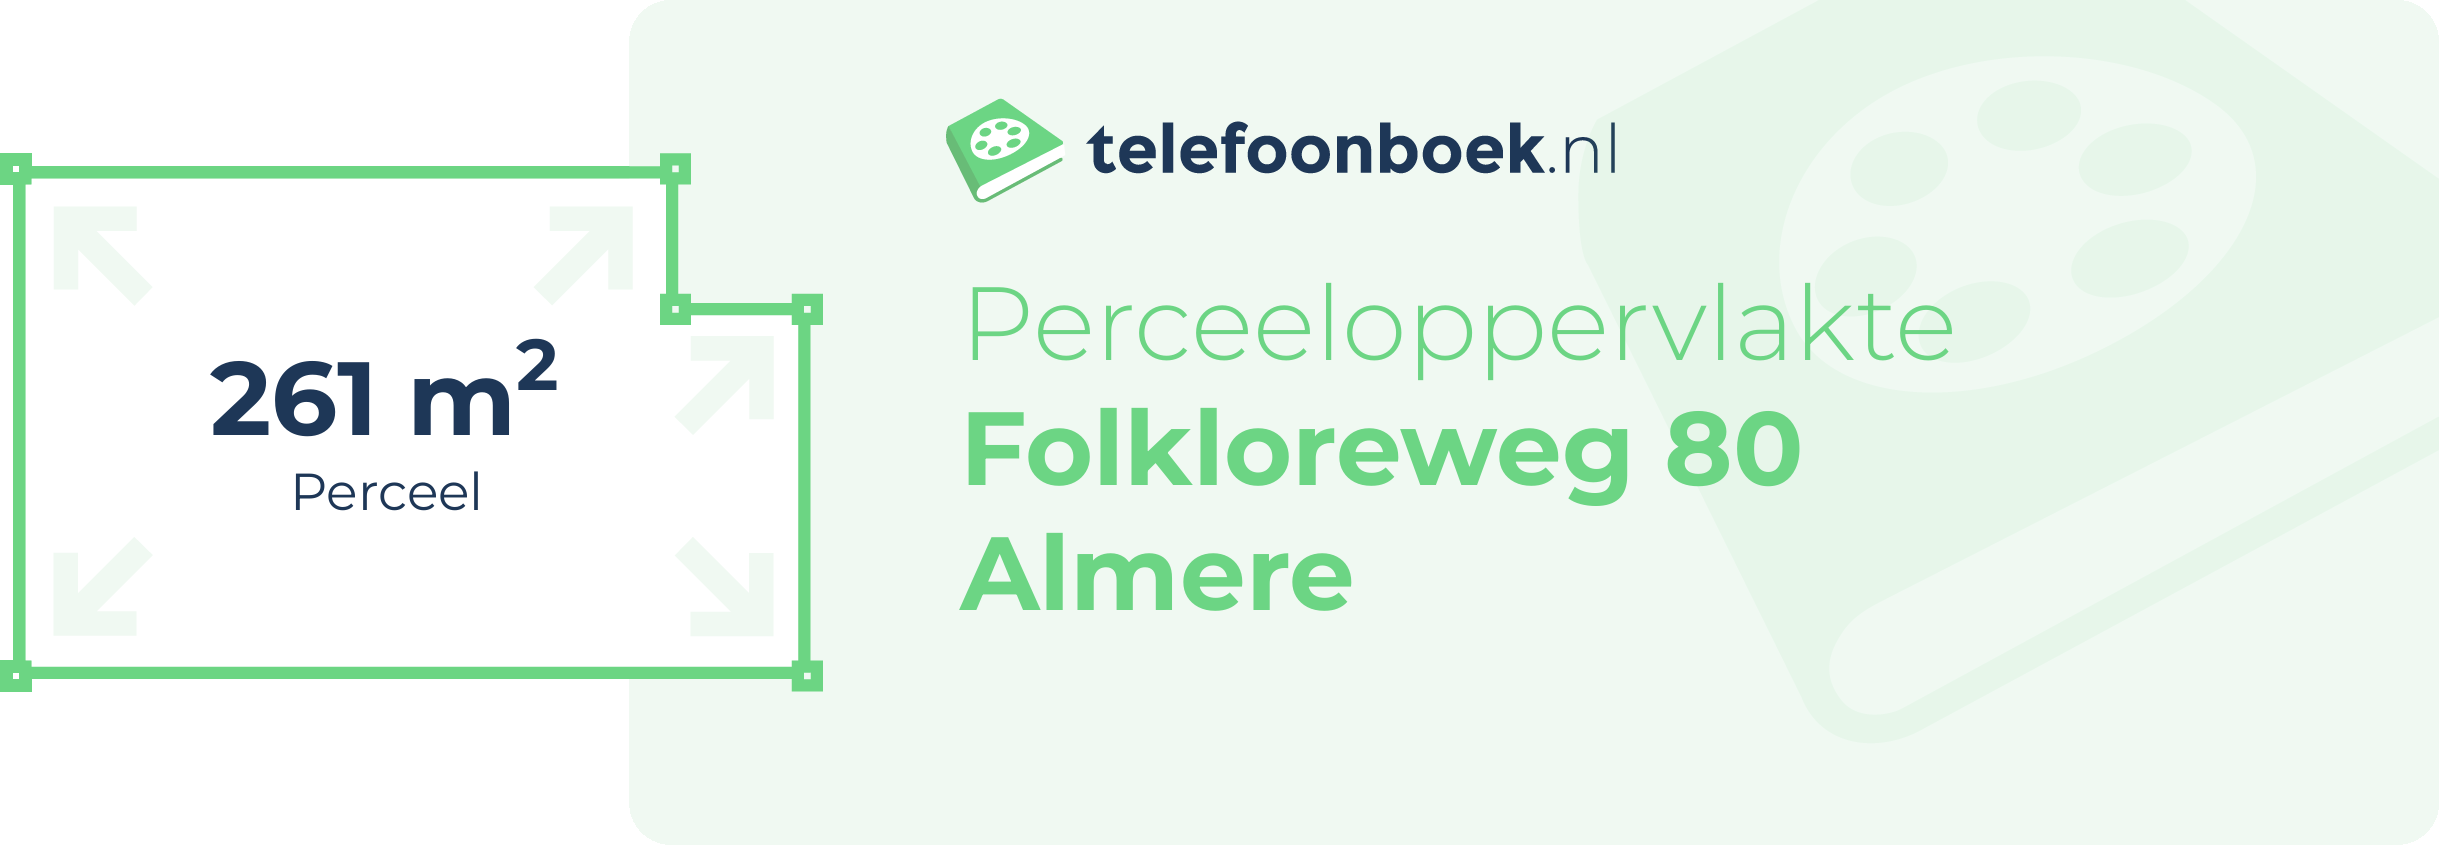 Perceeloppervlakte Folkloreweg 80 Almere